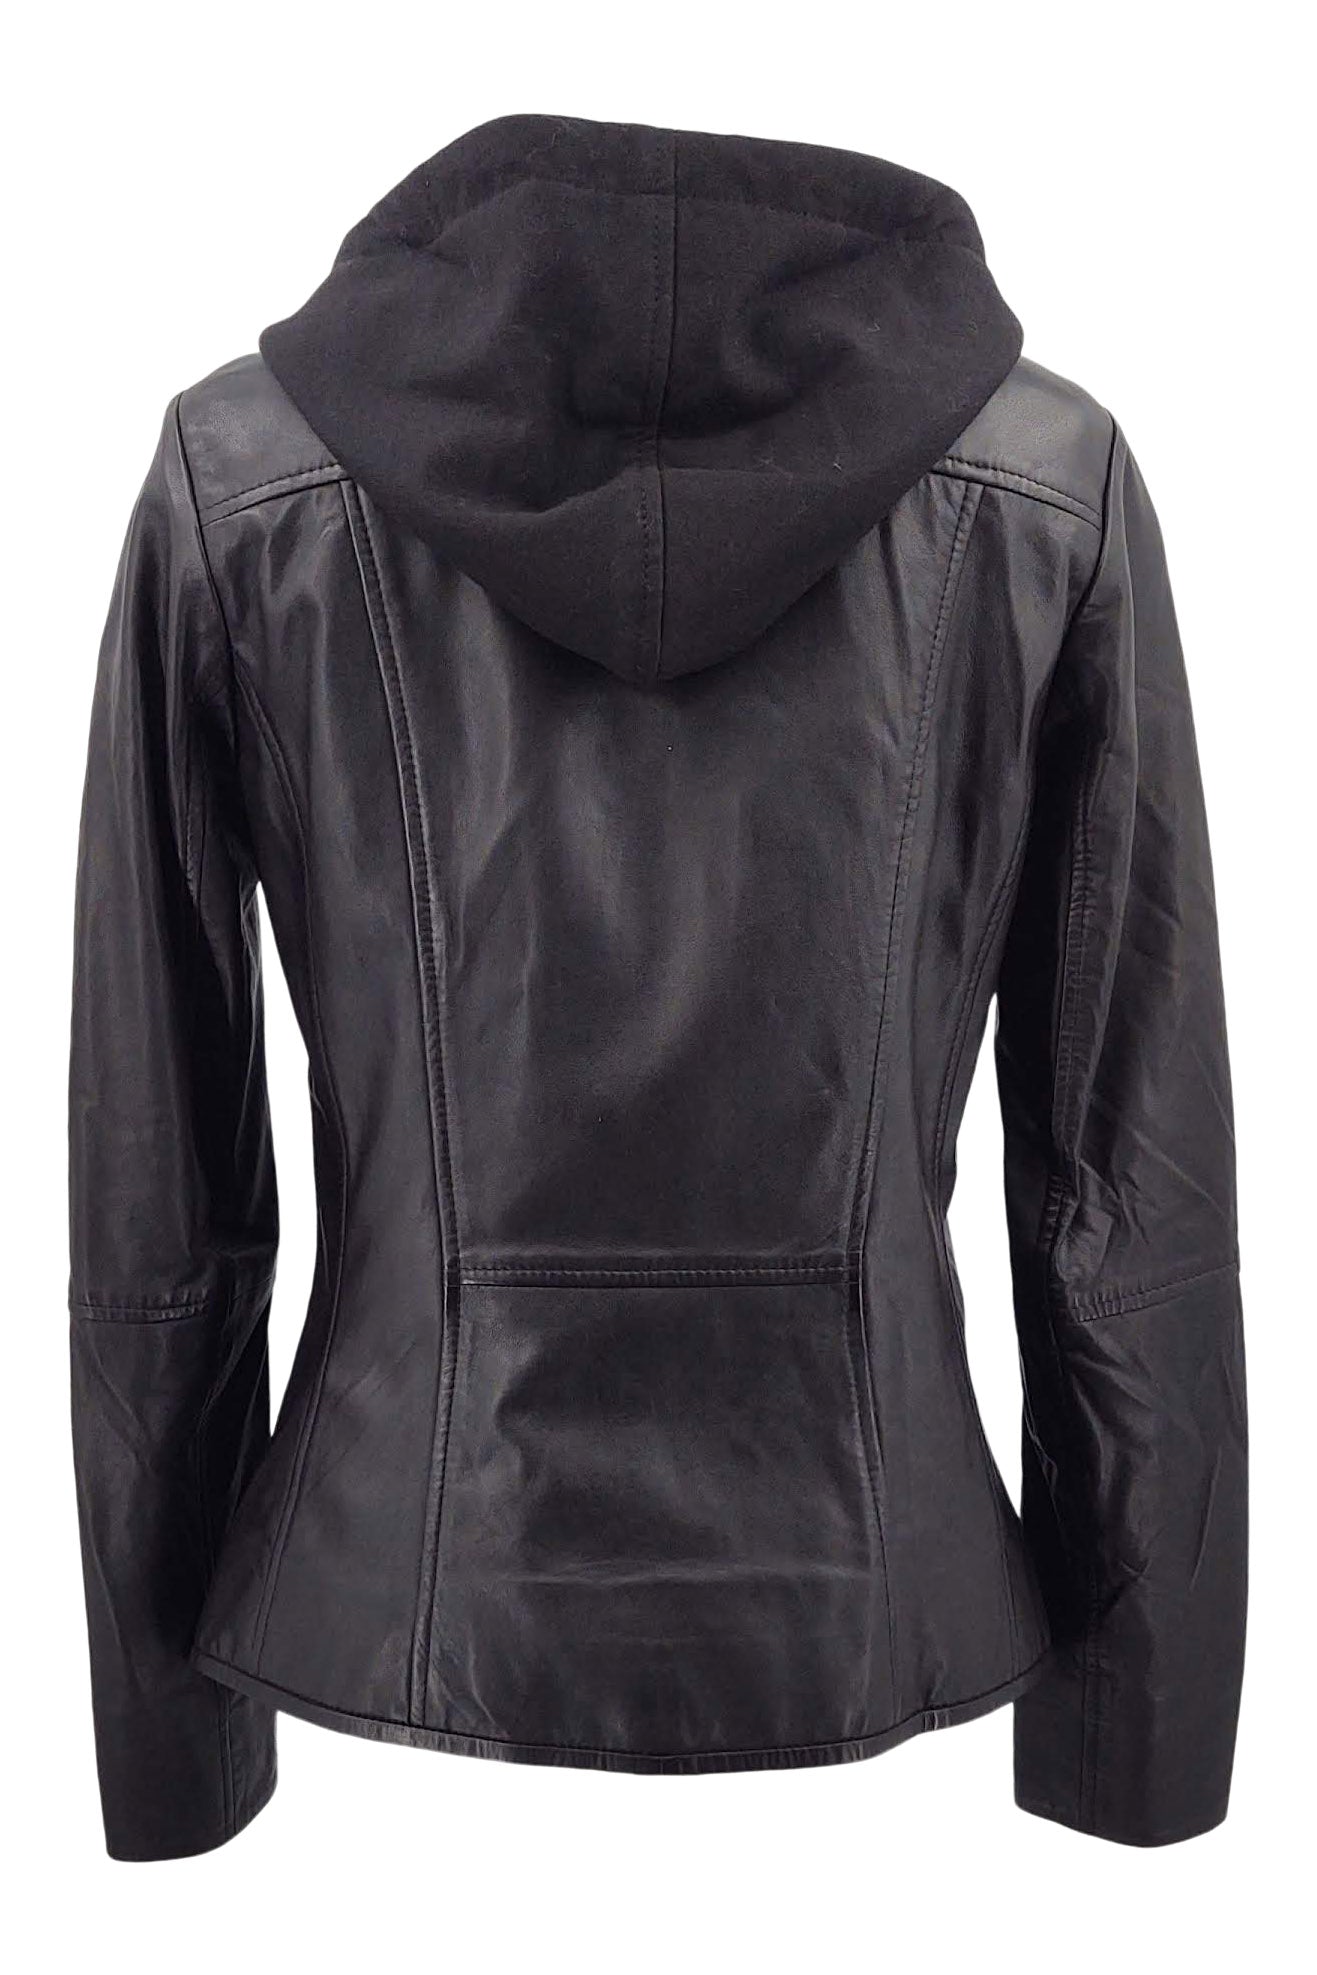 Zil - Hood - Lamb Thin Malli Leather -Women - Black / Læder Skinds Jakke - Levinsky - Kvinde | STAMPE PELS